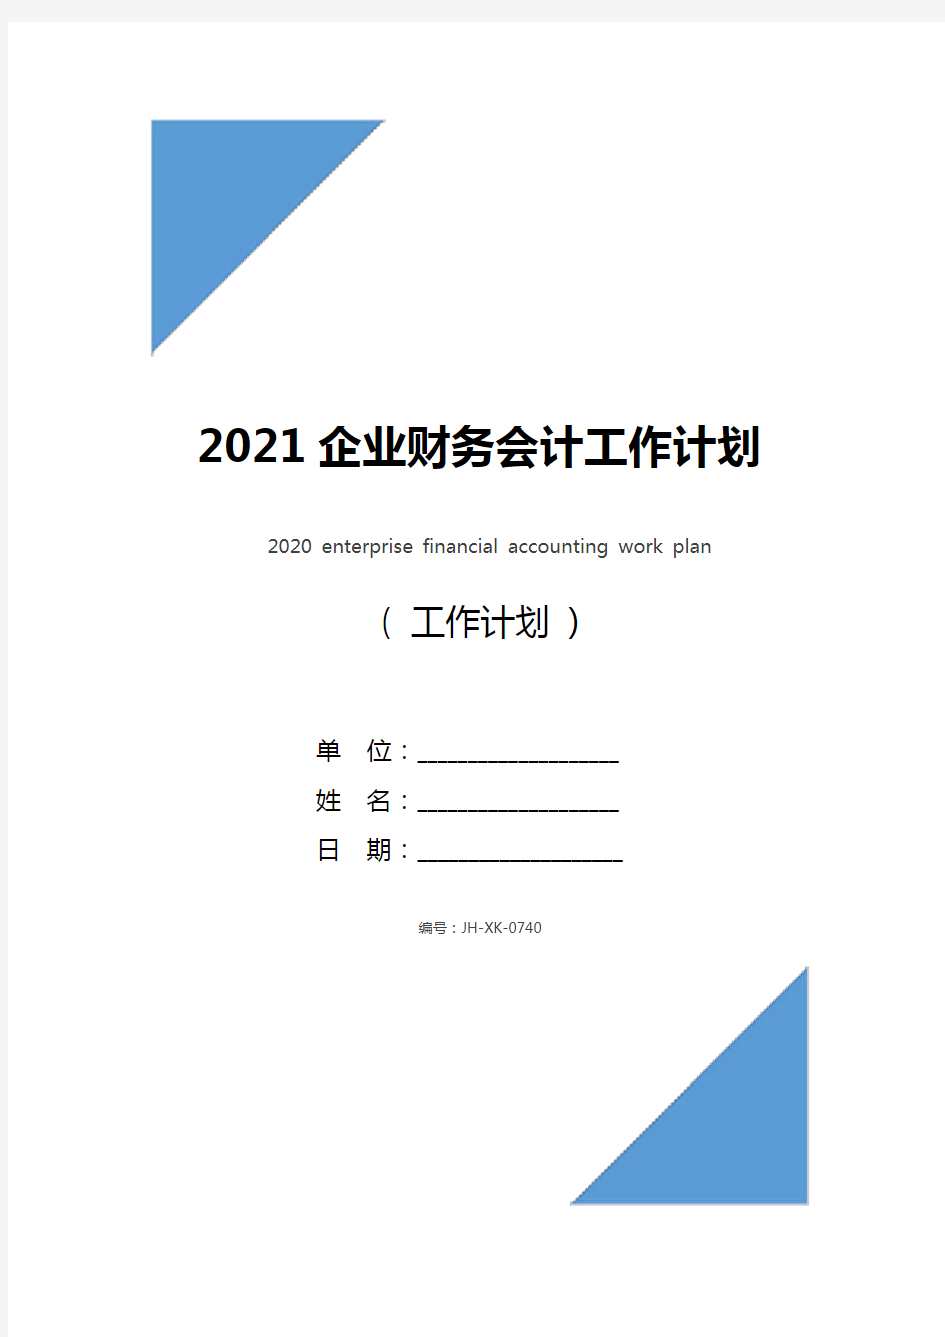 2021企业财务会计工作计划(最新版)